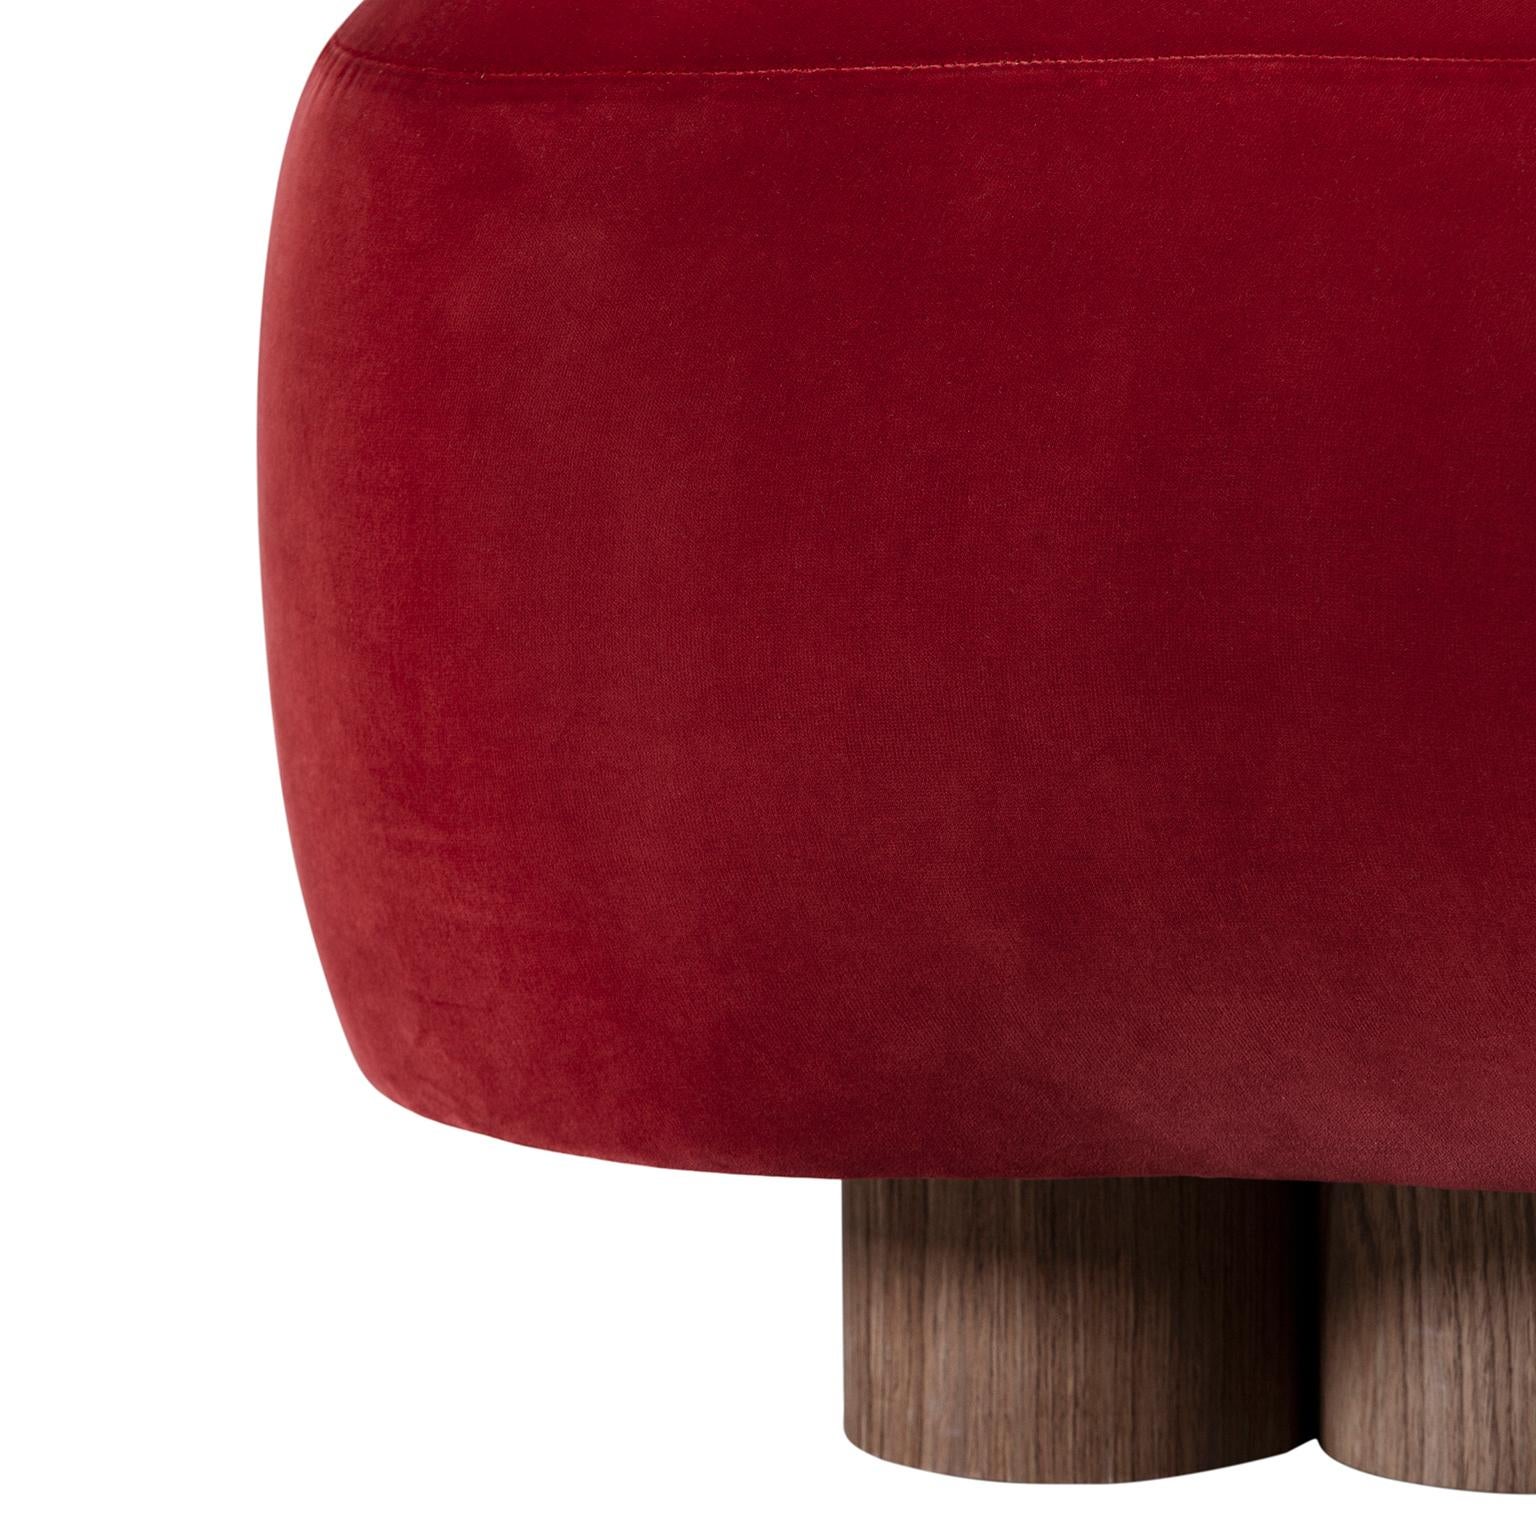 Walnut Modern Minho Chaise Lounge, DEDAR Velvet, Handmade Portugal Greenapple For Sale